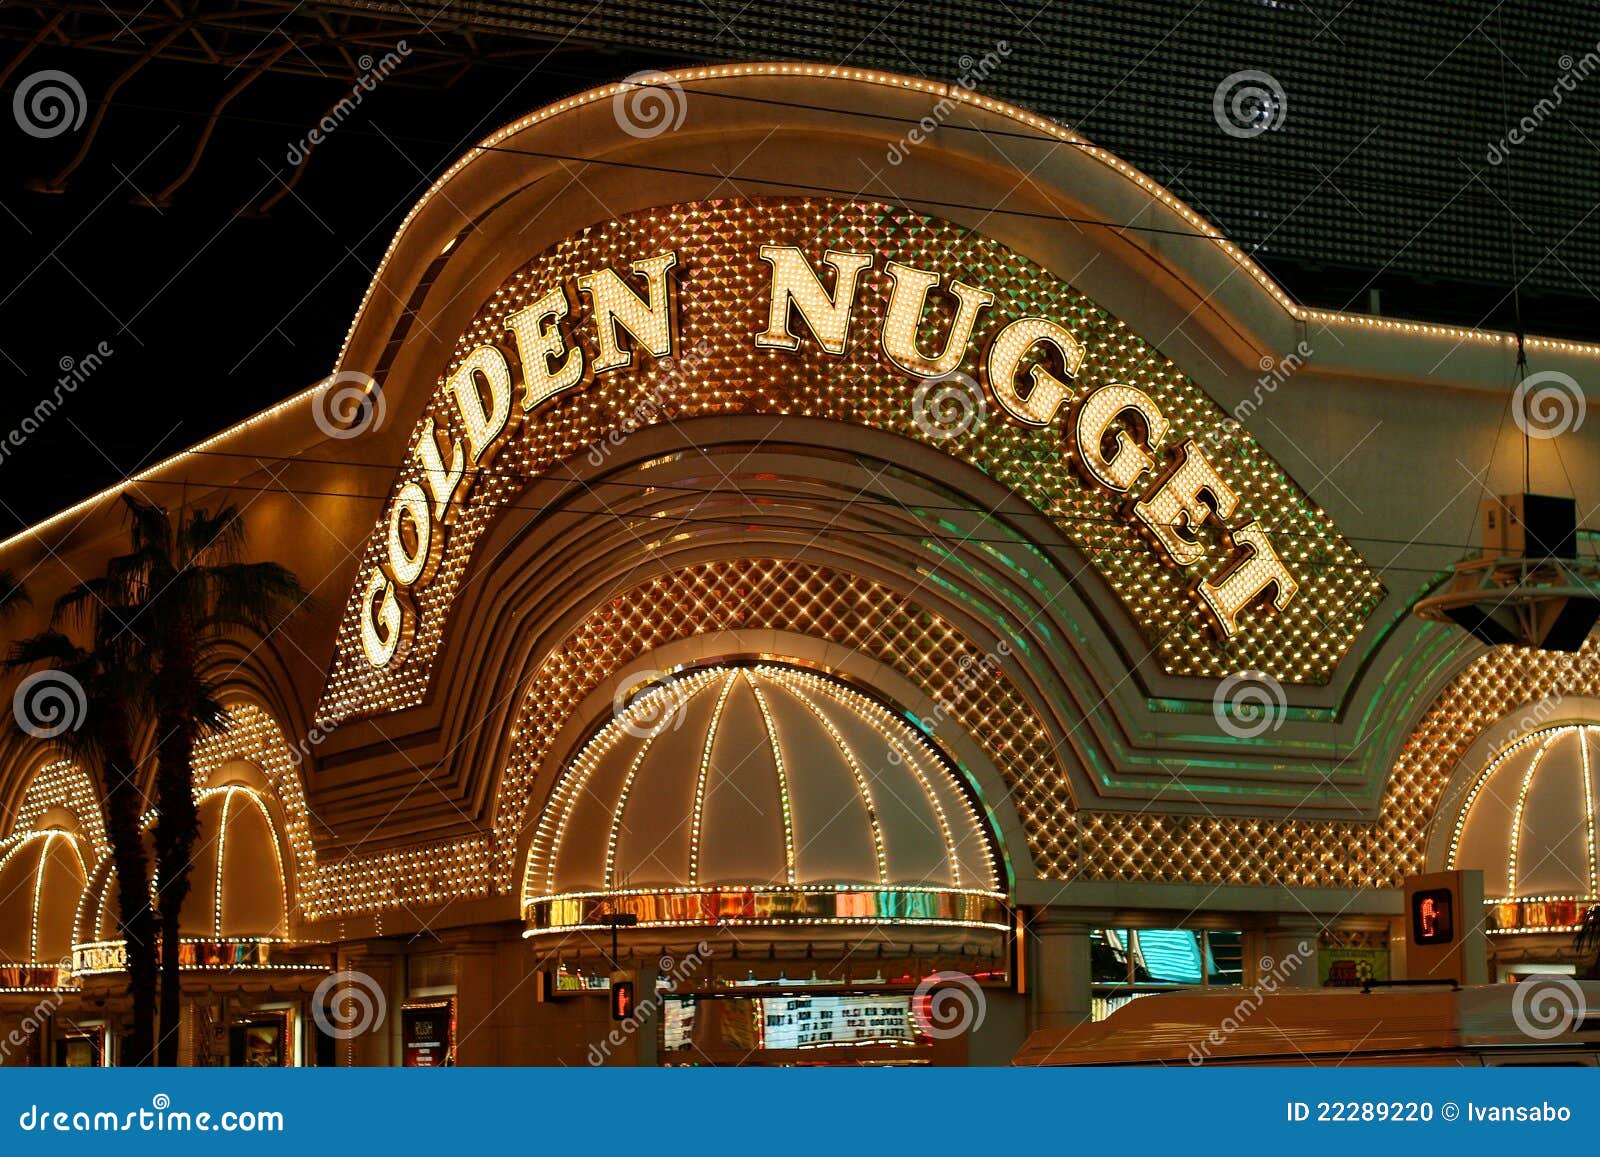 golden nugget casino online